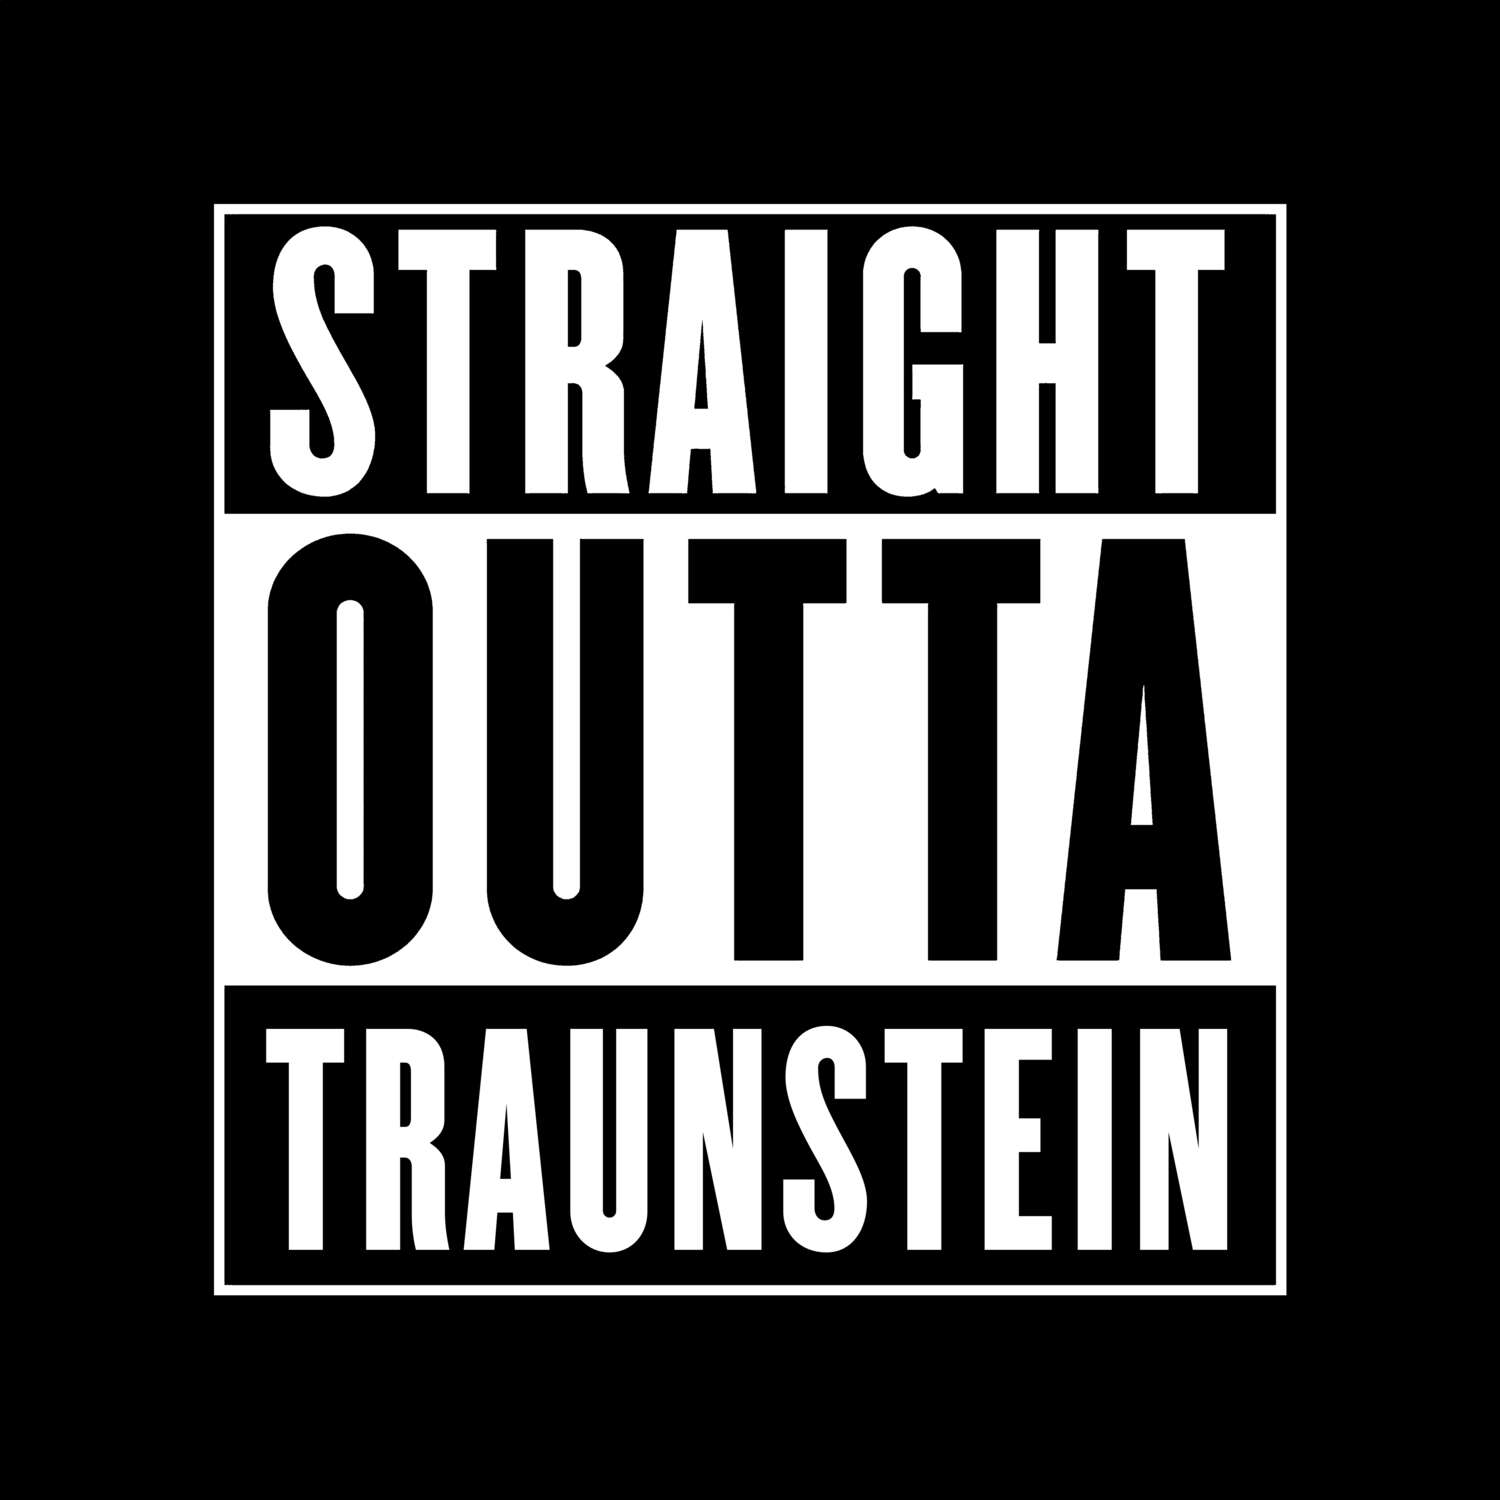 Traunstein T-Shirt »Straight Outta«